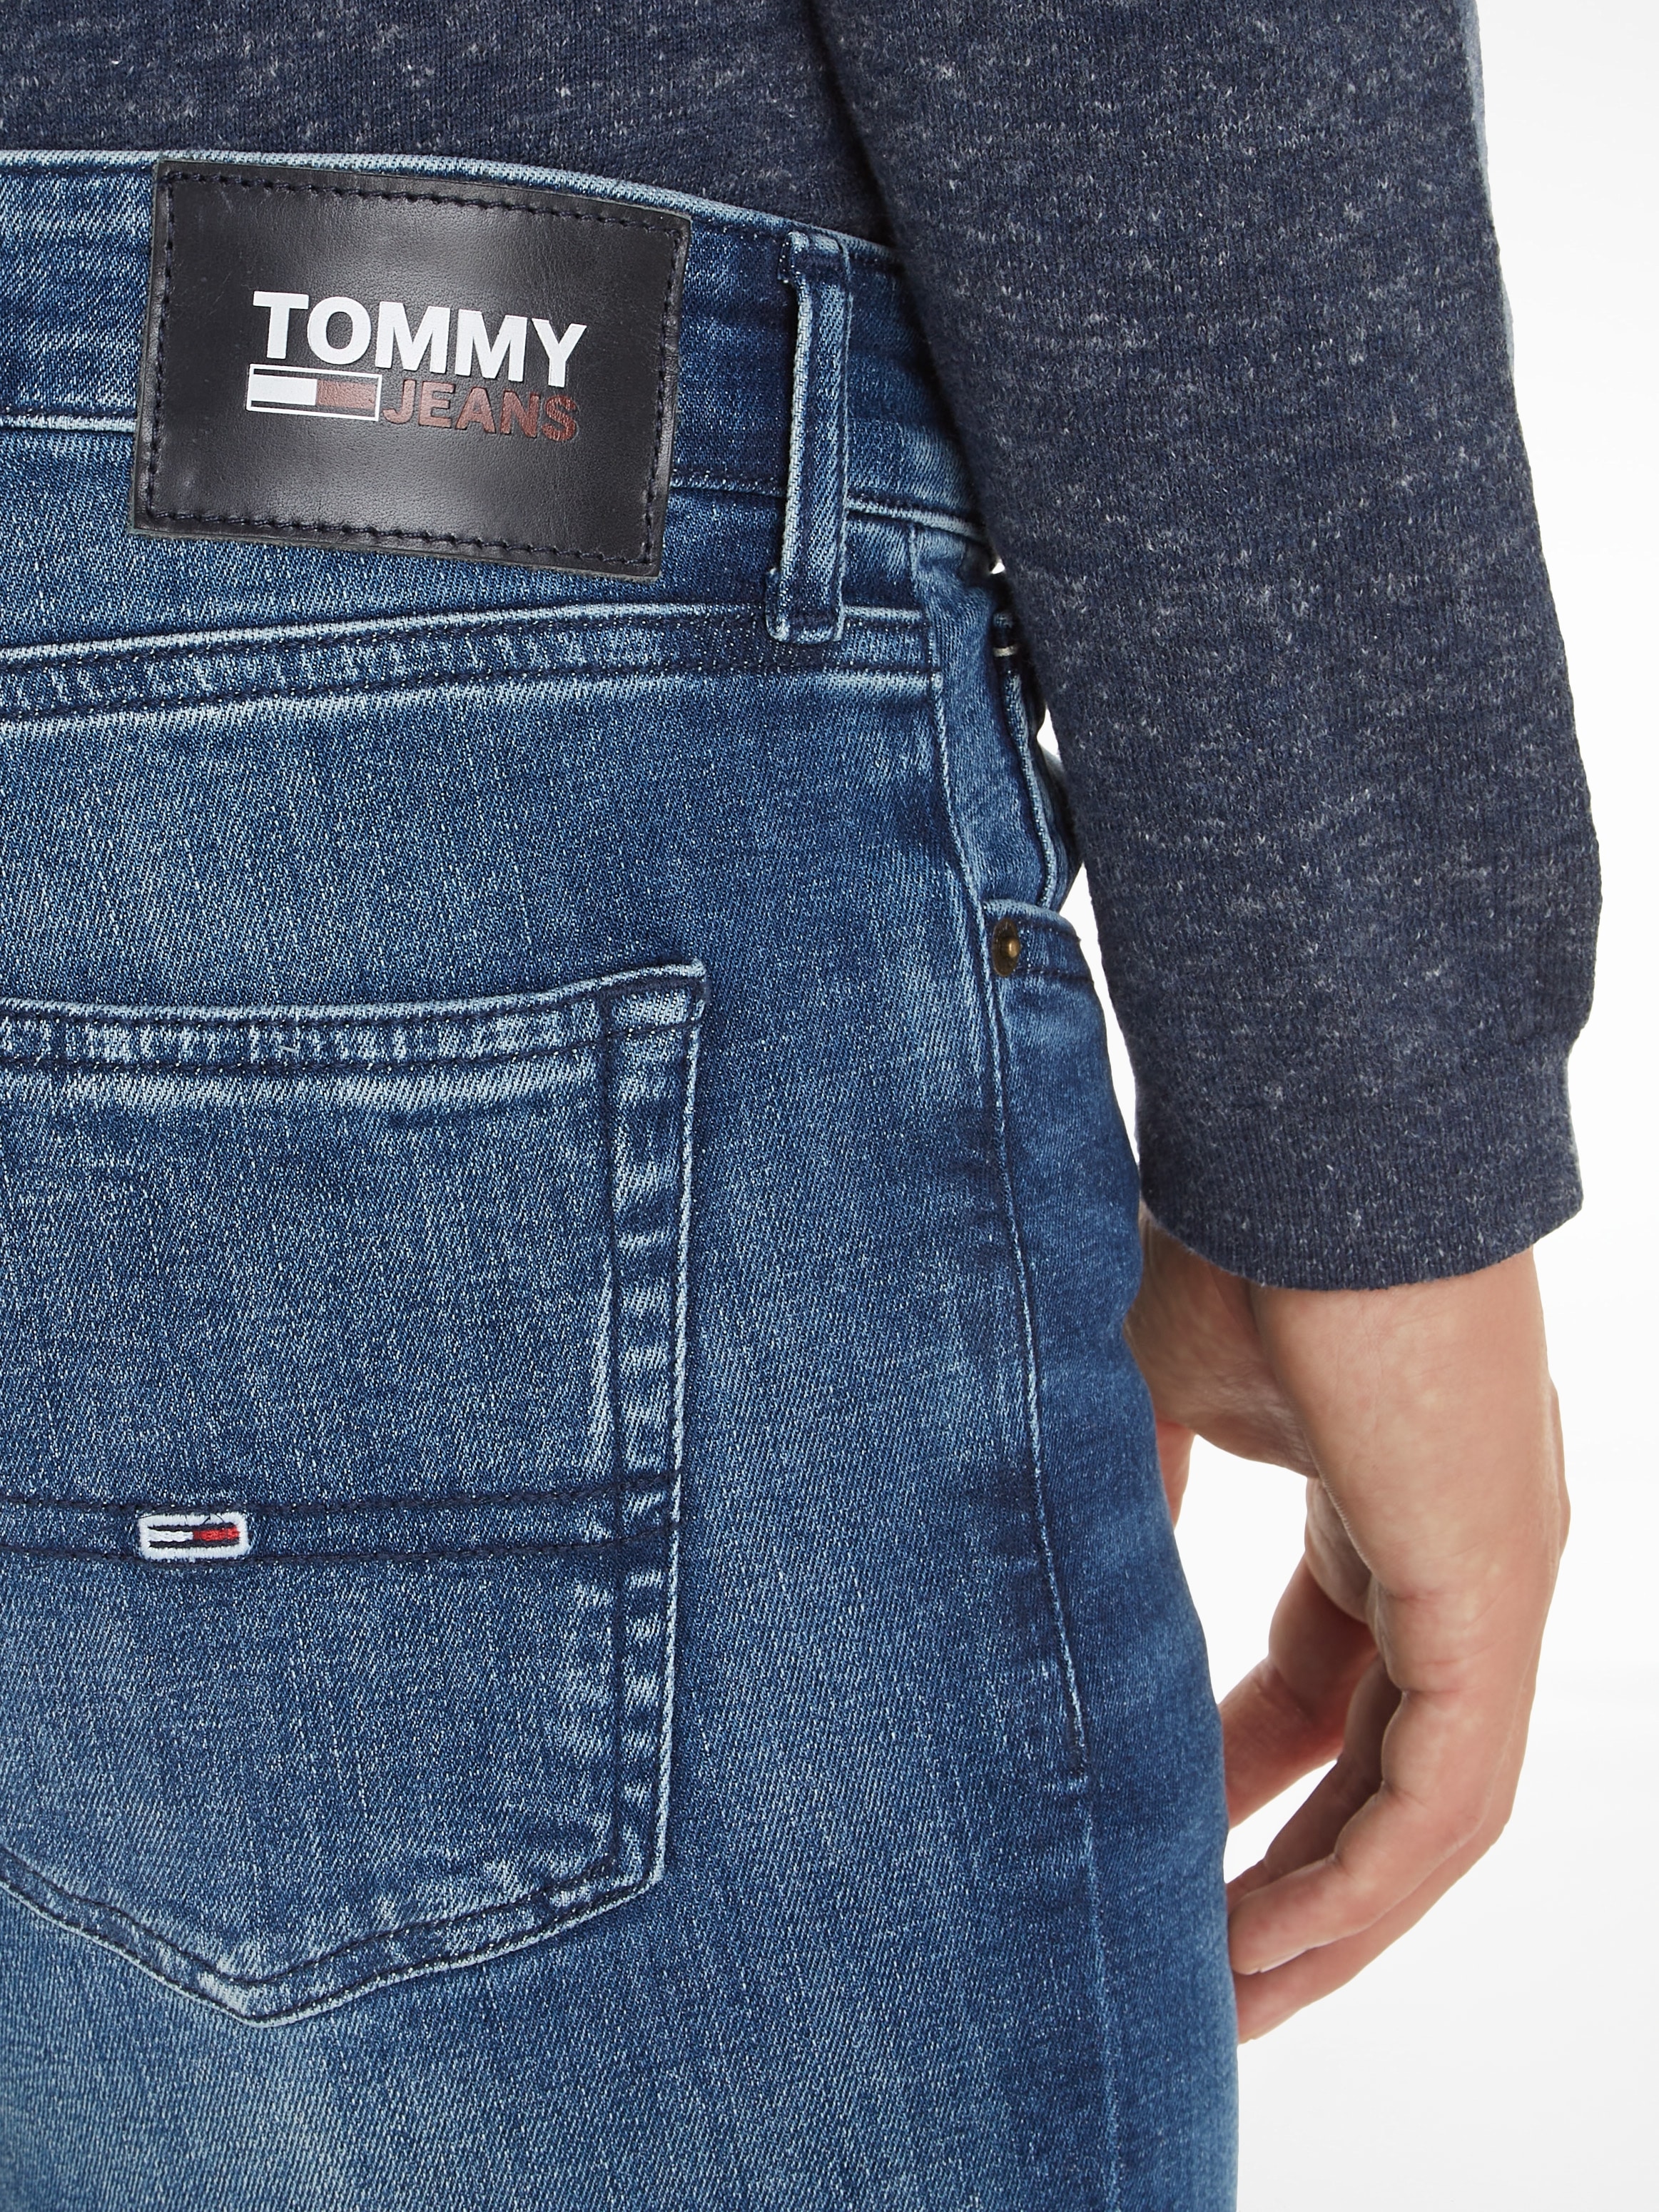 Tommy Jeans Slim-fit-Jeans »SCANTON SLIM« online kaufen bei OTTO